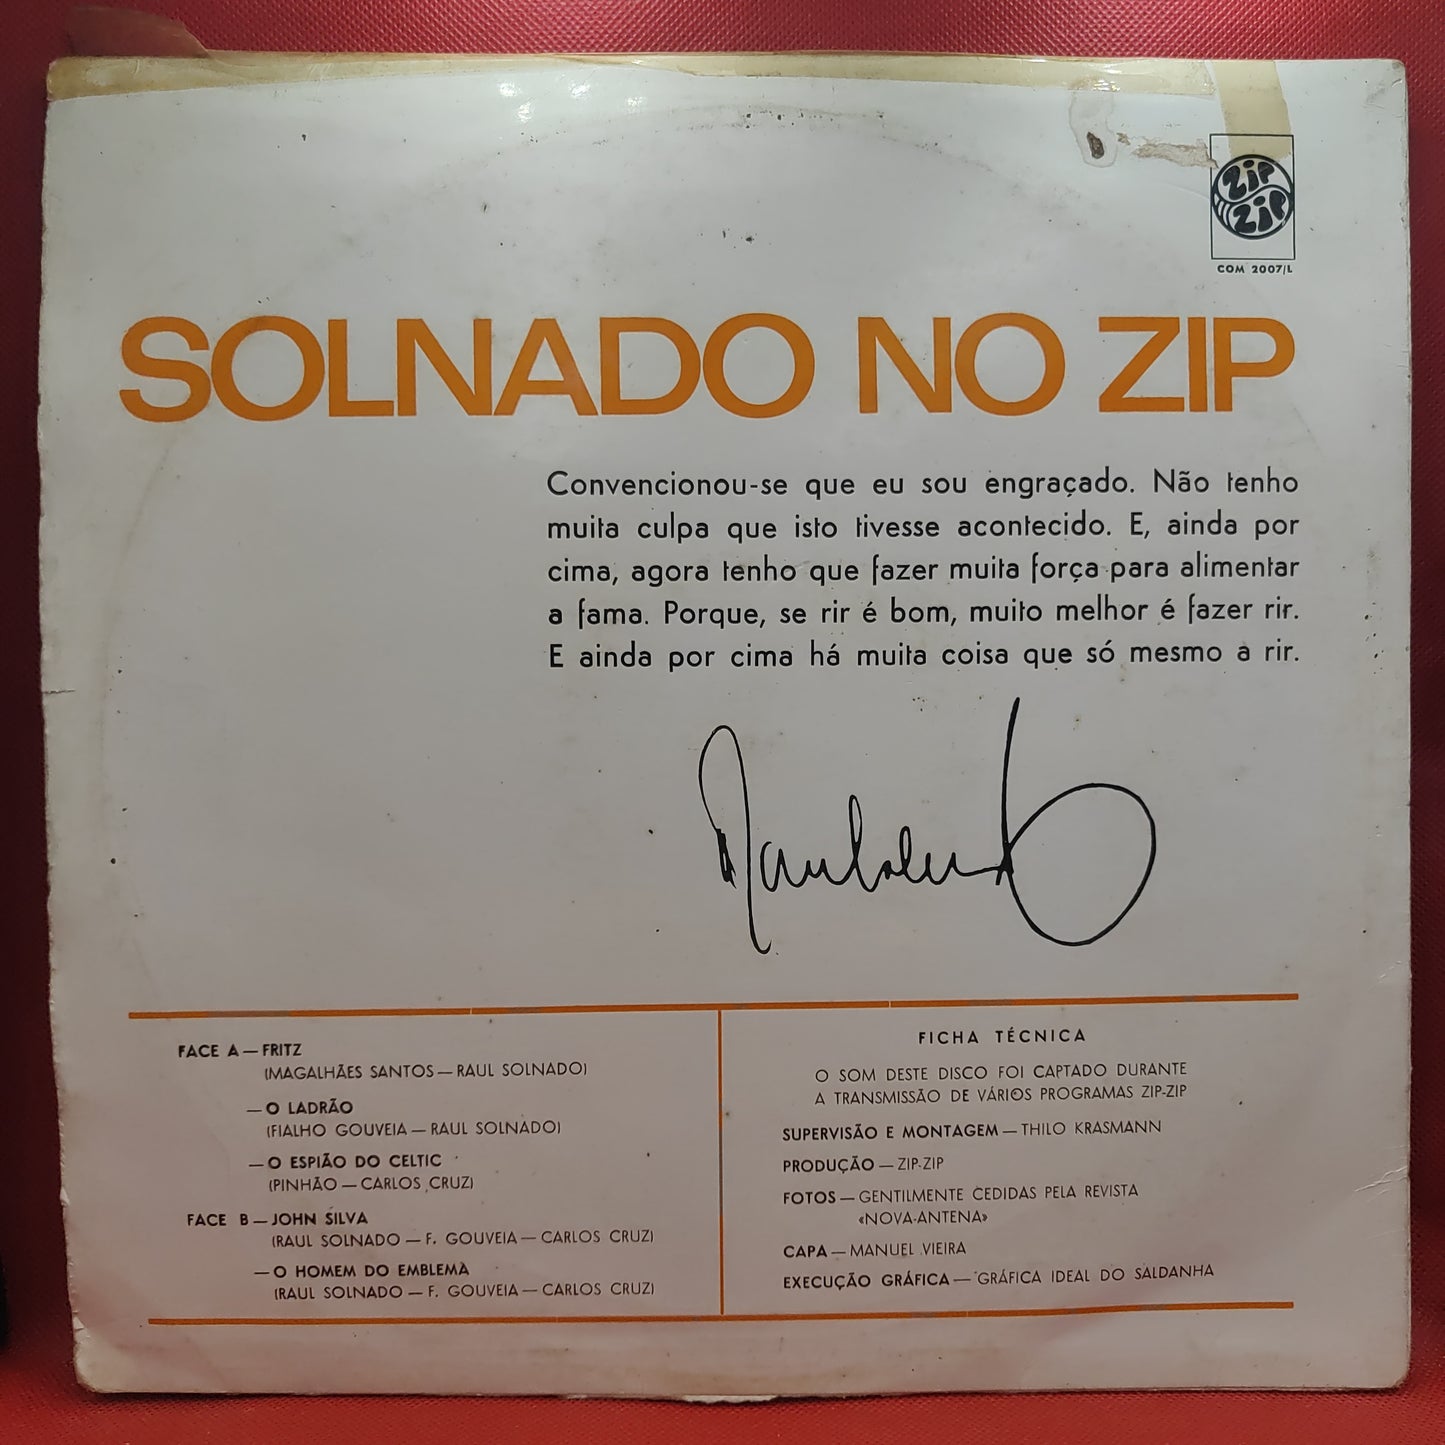 Raul Solnado – Solnado No Zip